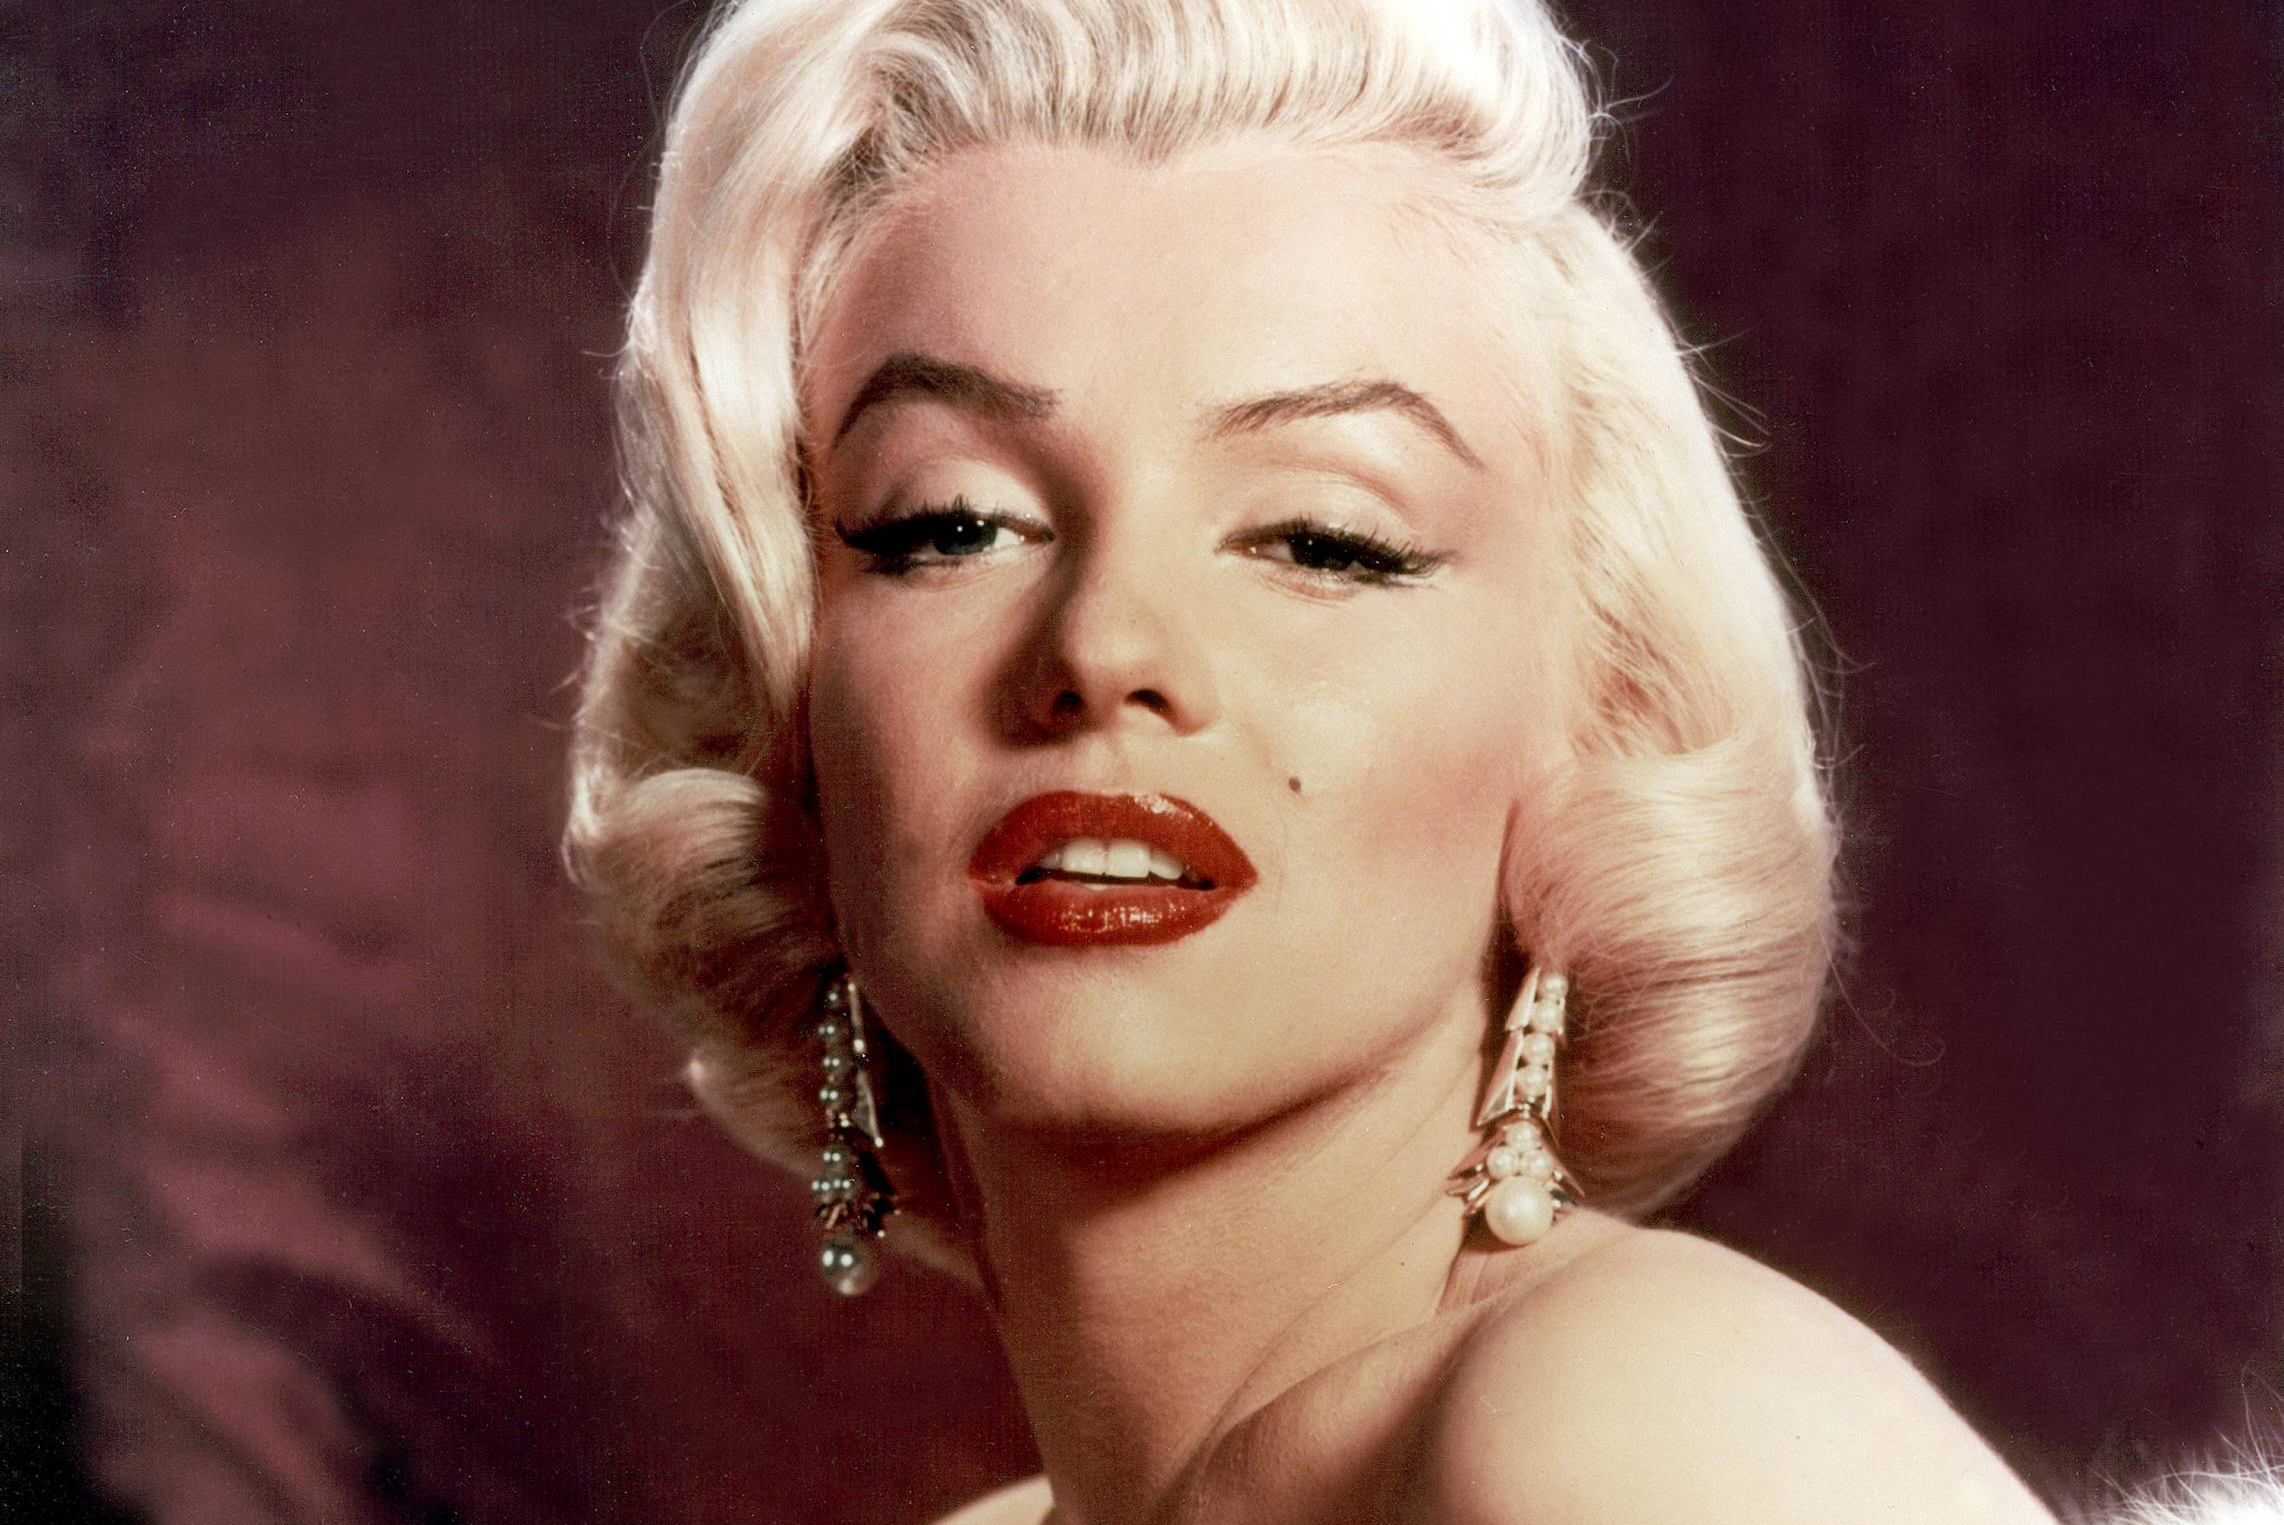 Marilyn Monroe föddes 1926 i Kalifornien och hette egentligen Norma Jeane Mortenson. Hon var fotomodell och skådespelerska och blev under 50-talet känd för sitt blonda hår, kurviga kropp och sexiga utstrålning. 